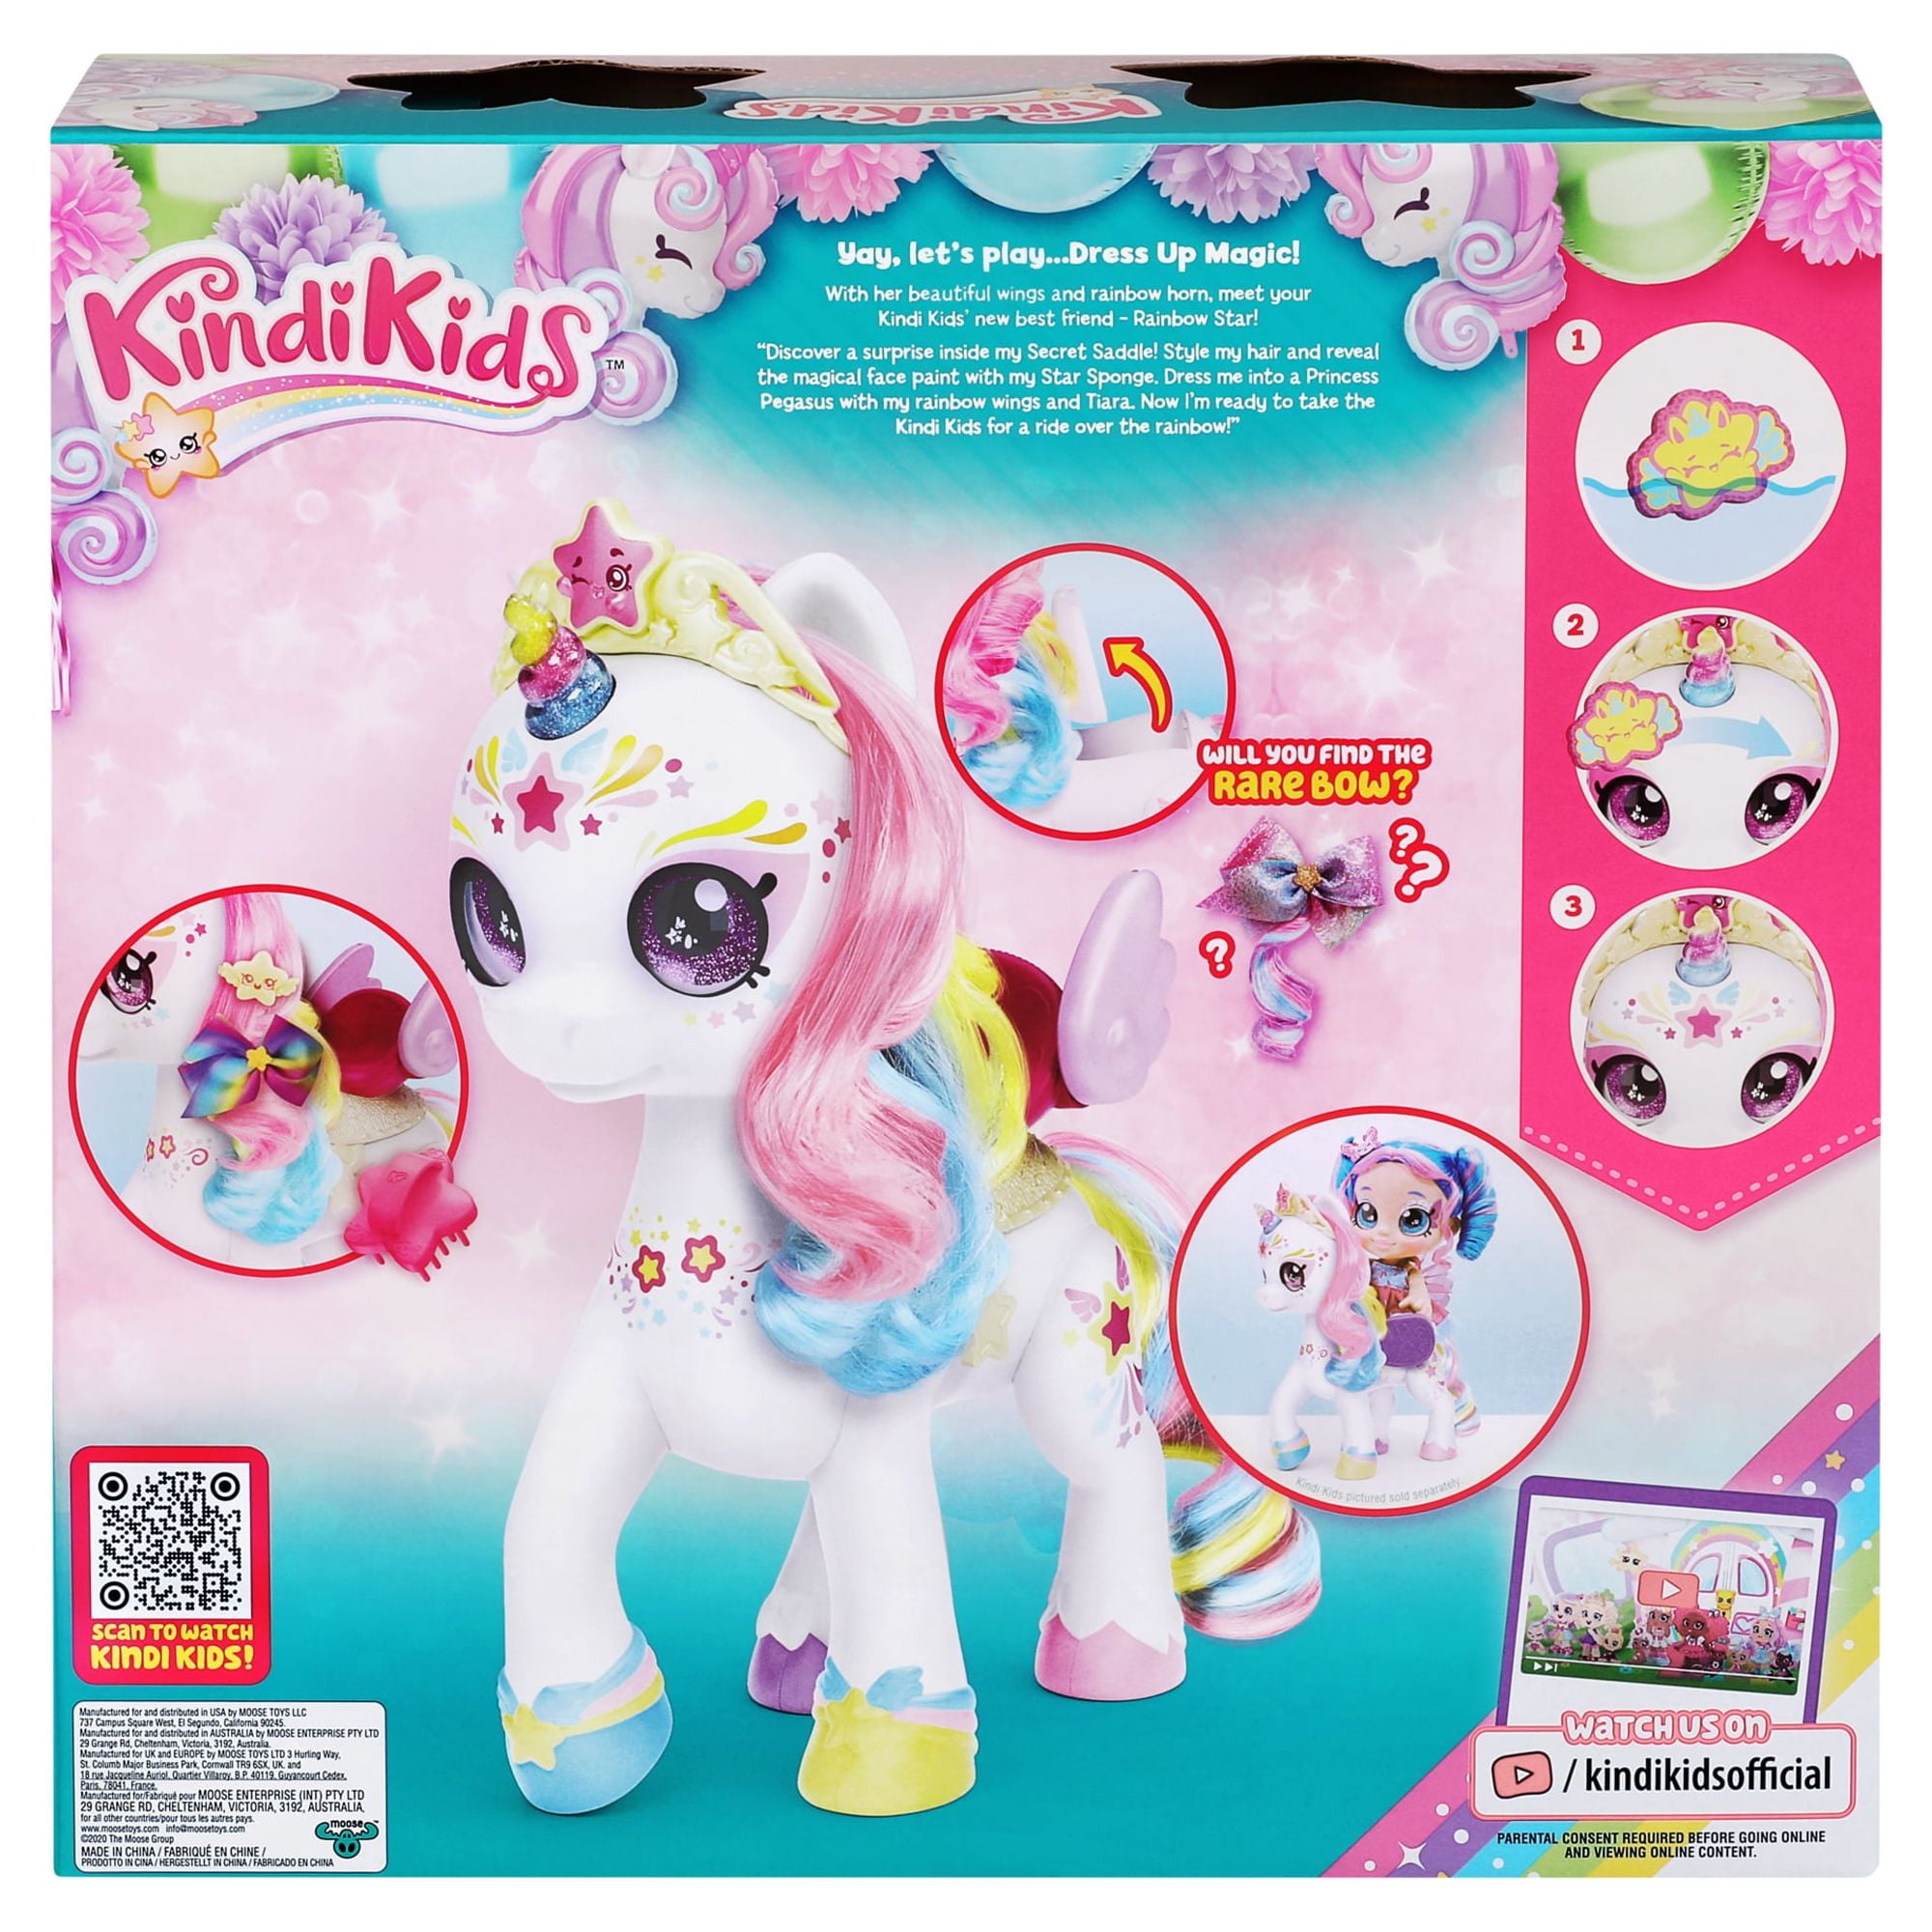 Kindi Kids, Dress up Magic Secret Saddle Rainbow Unicorn with Face Paint  Reveal, Ages 3+